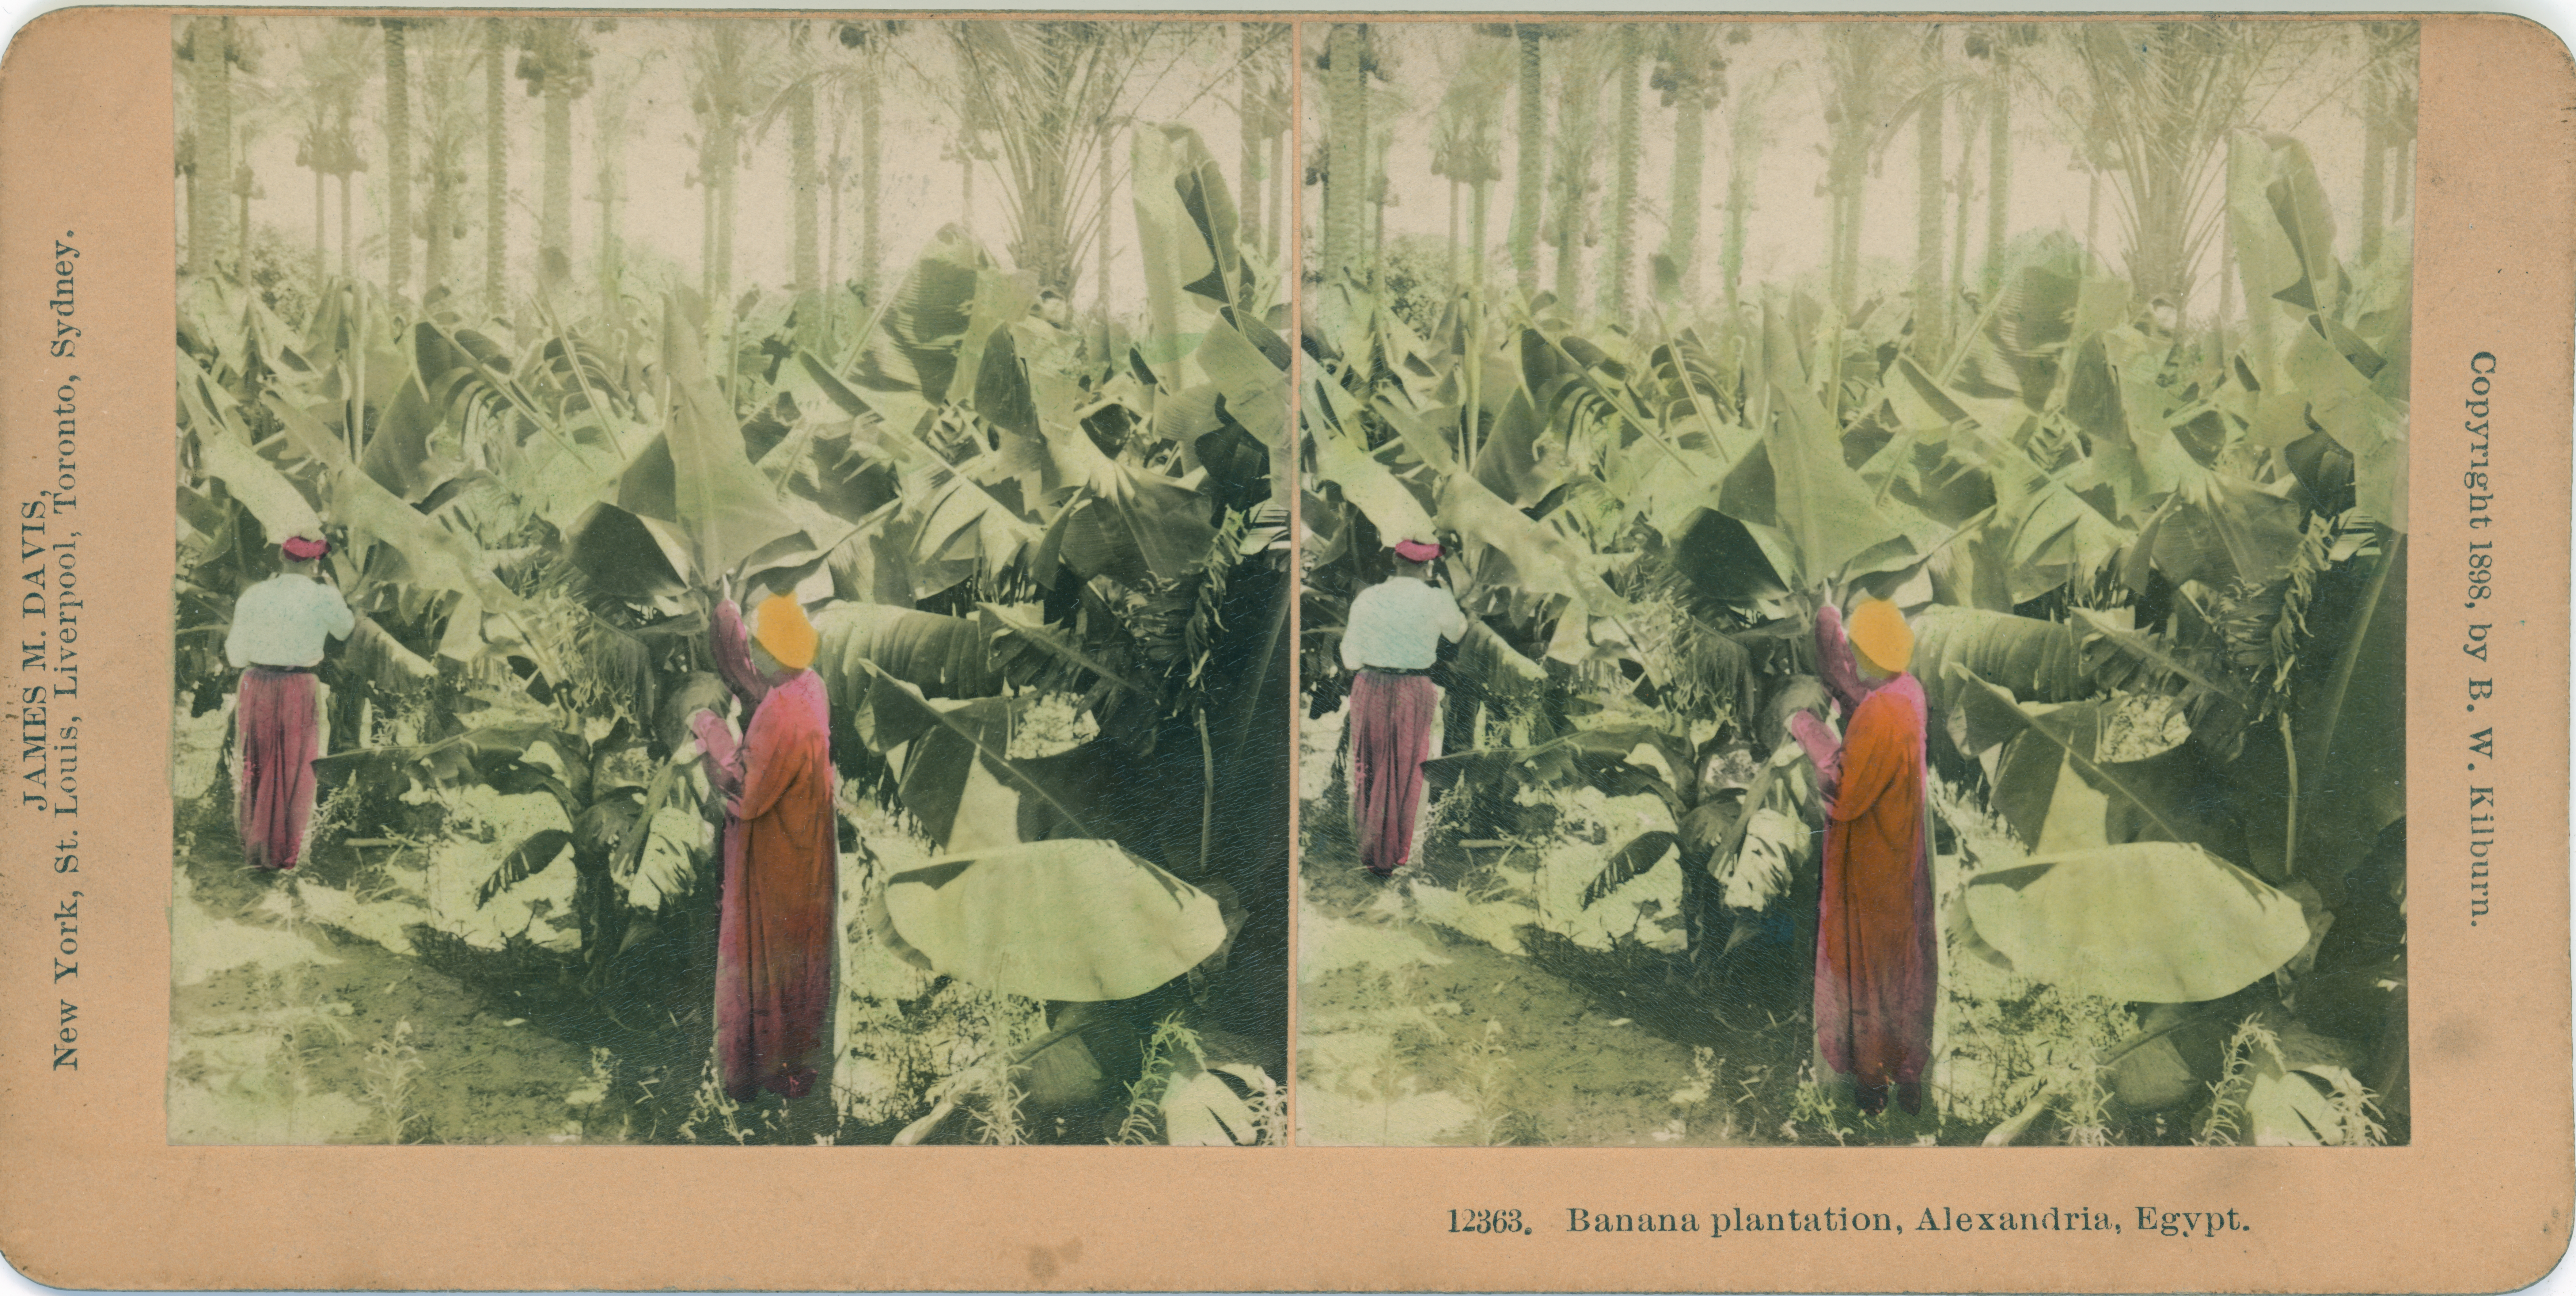 Banana plantation, Alexandria, Egypt.